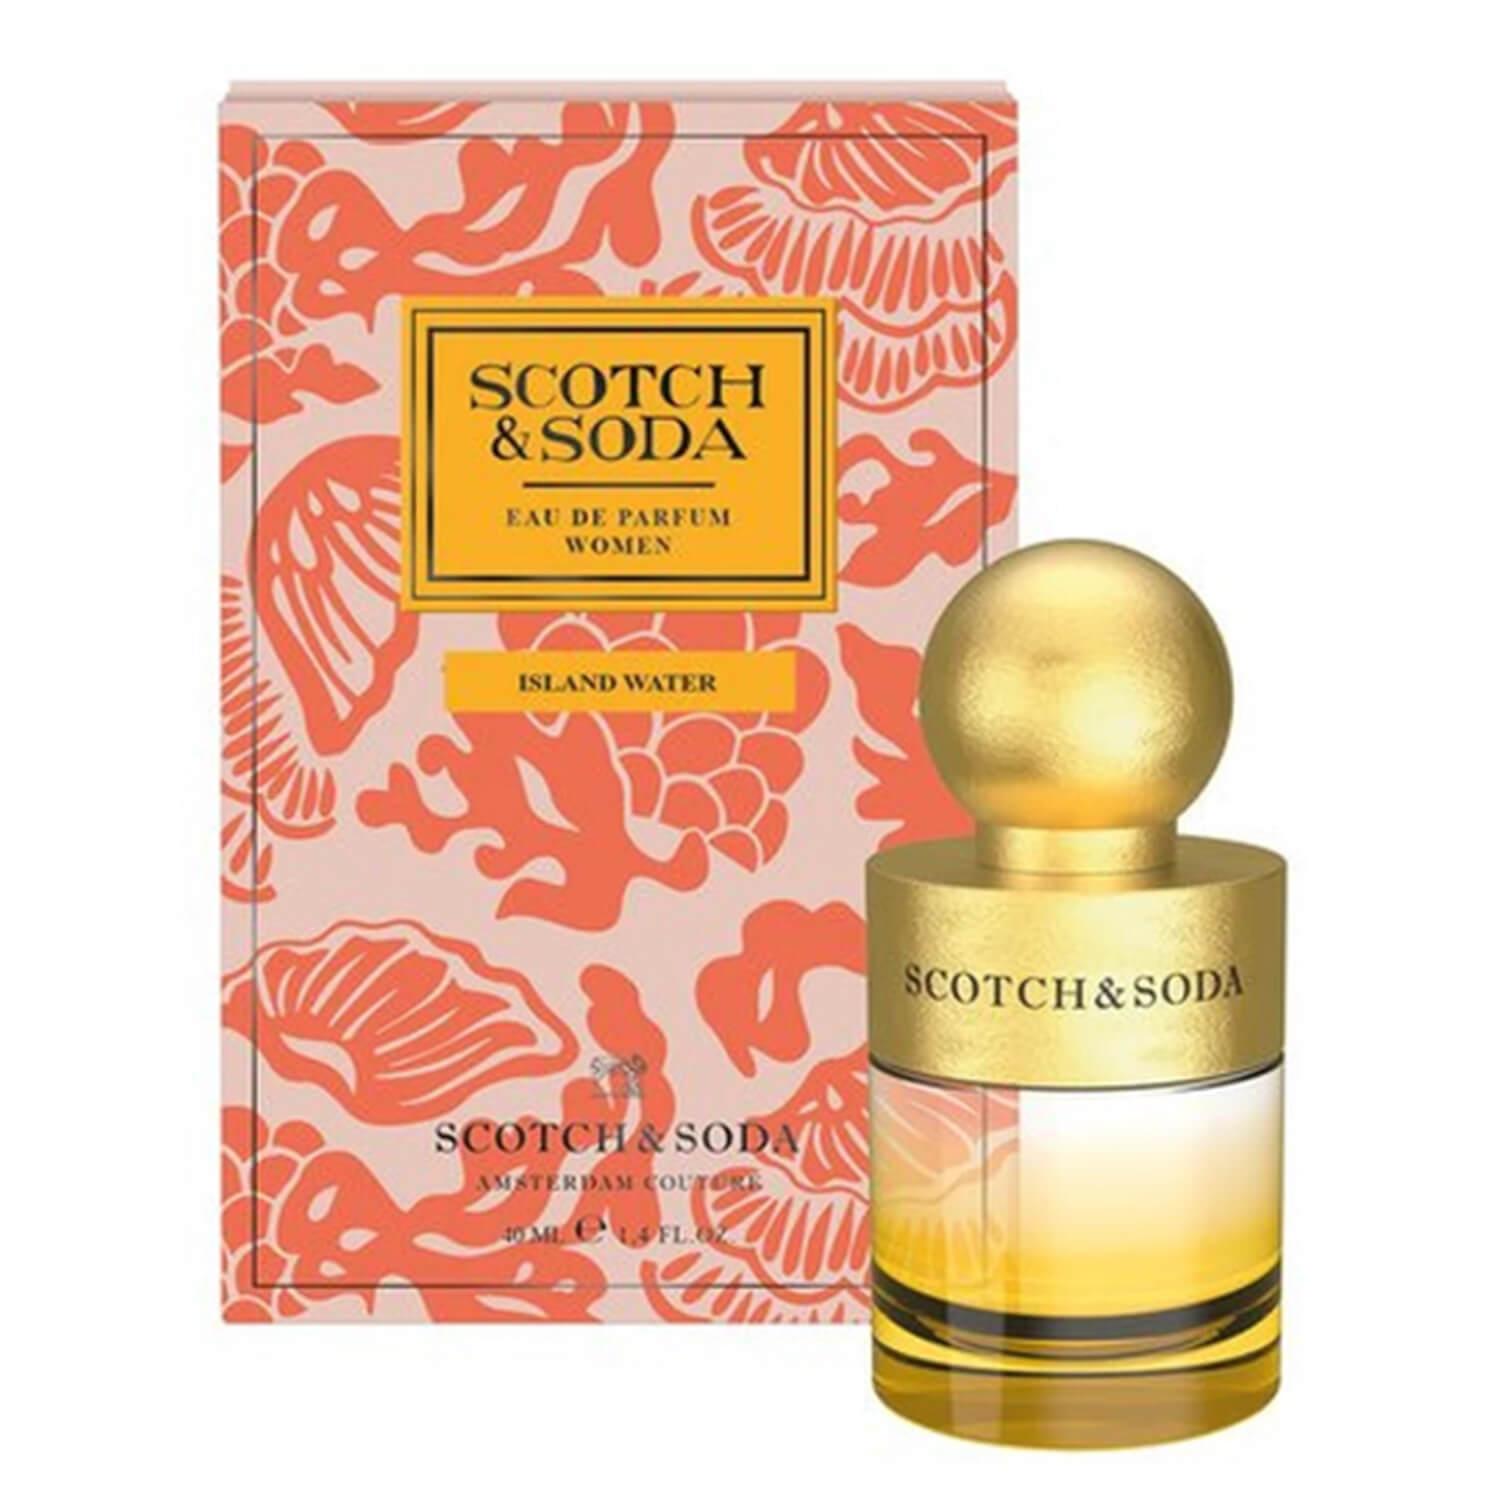 SCOTCH & SODA - Island Water Woman Eau de Parfum